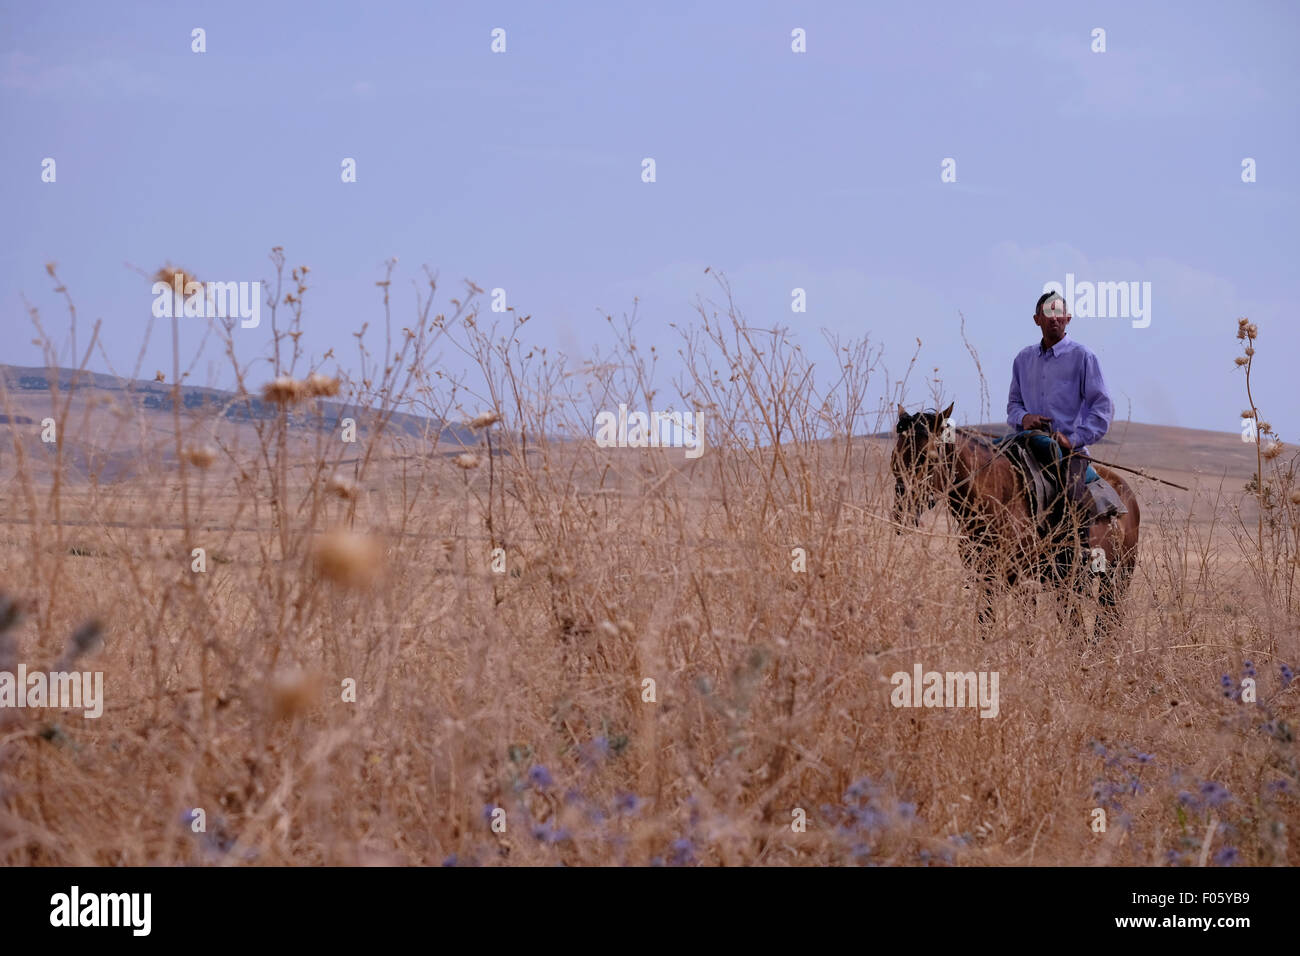 Un villageois monté sur un cheval dans une région rurale en Azerbaïdjan Banque D'Images